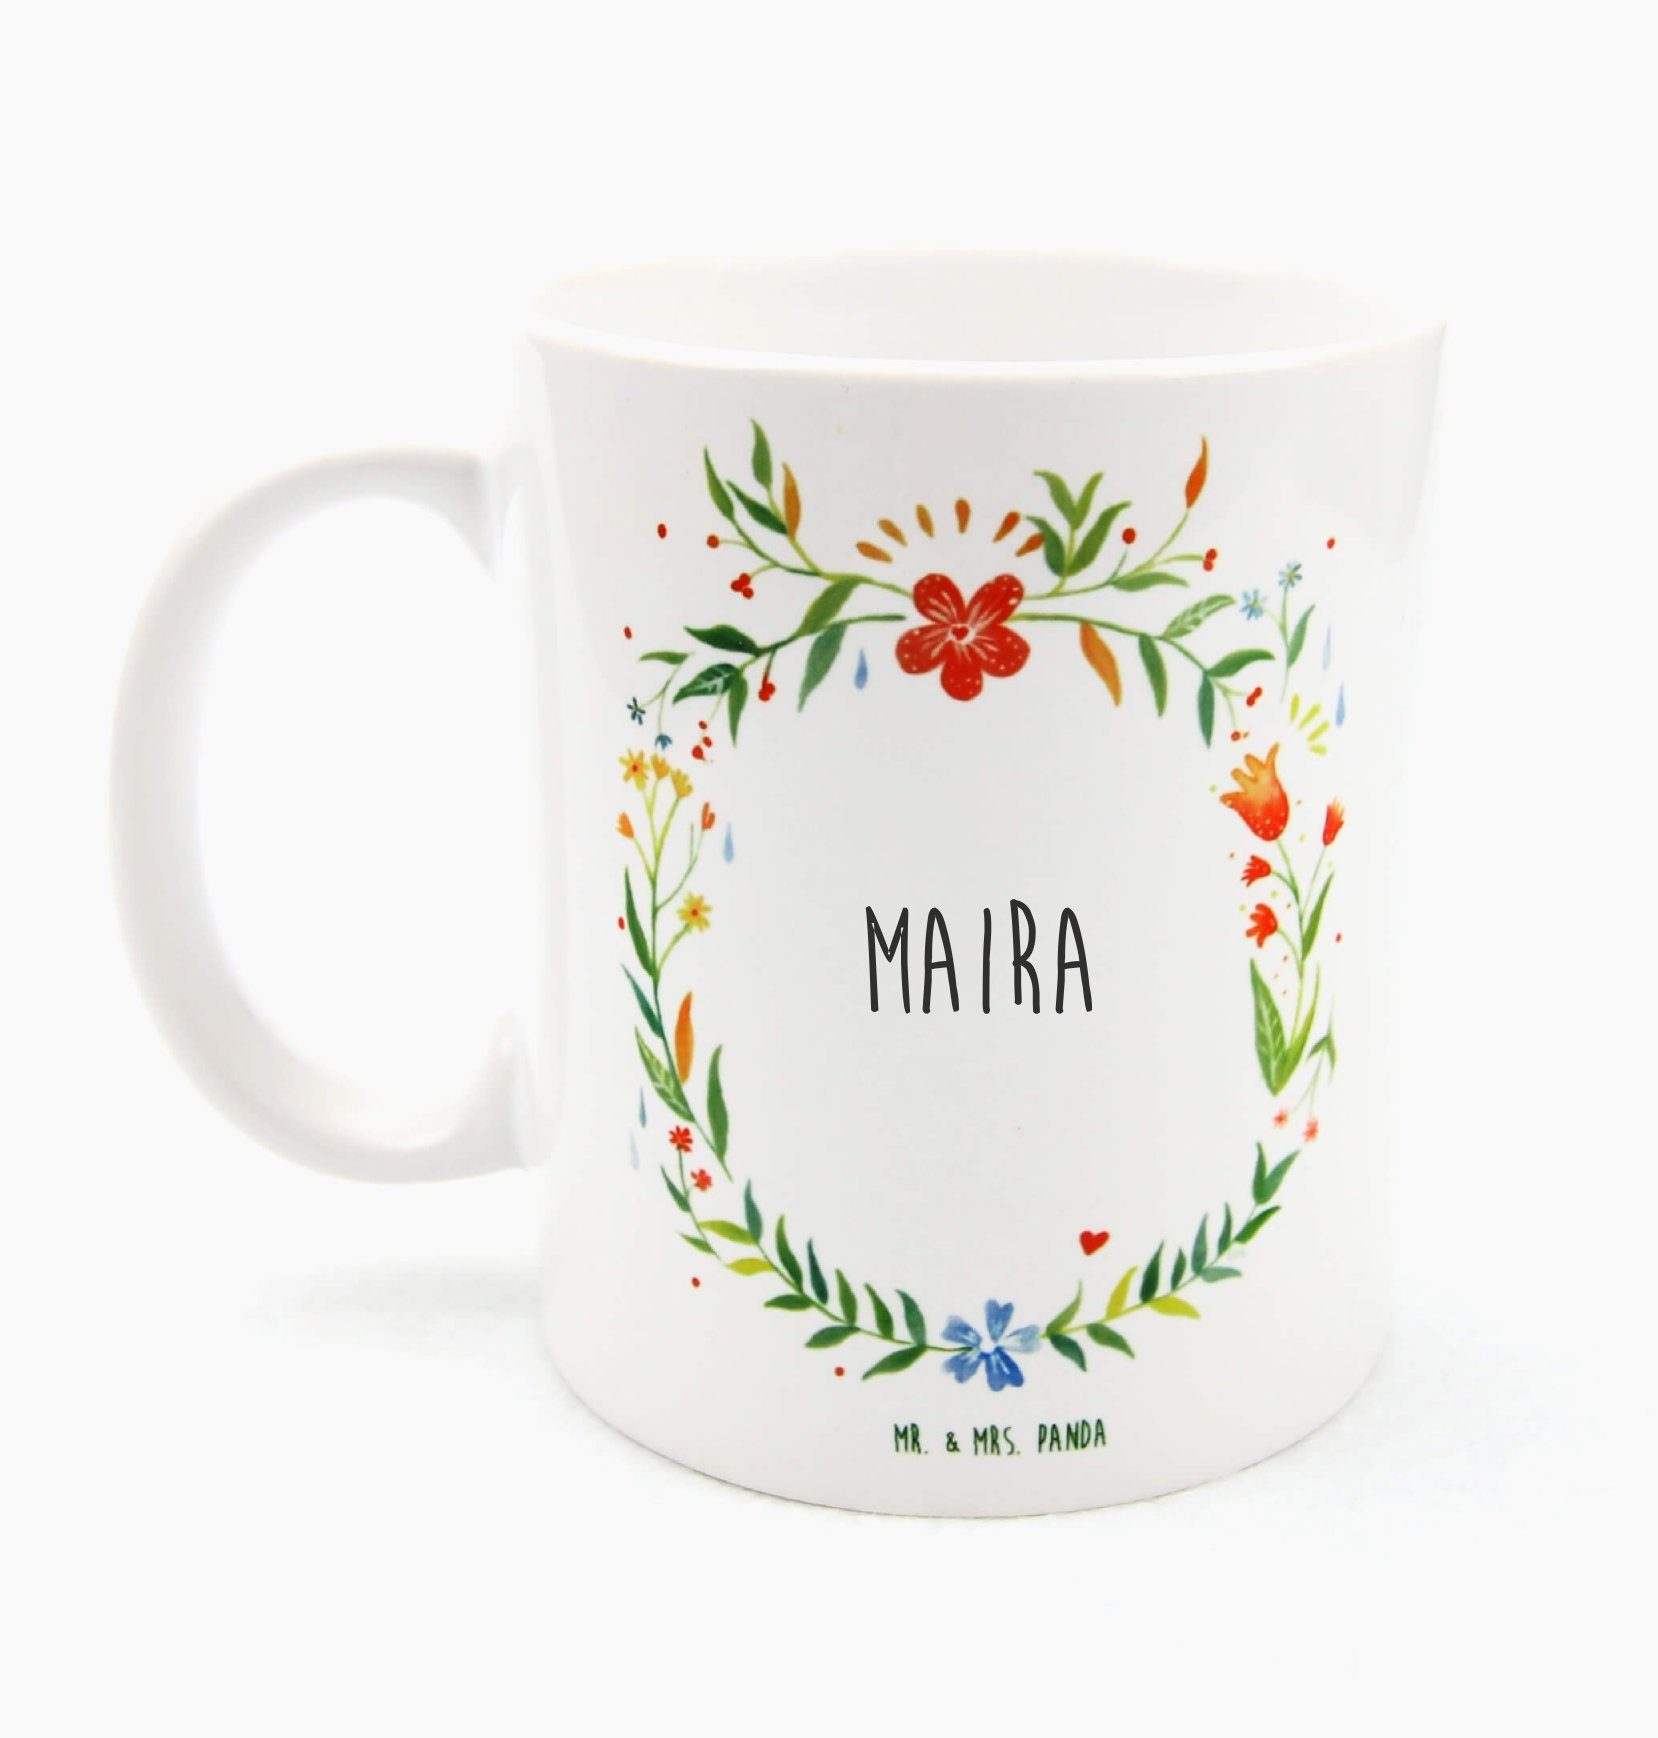 Mr. & Mrs. Panda Tasse Maira - Geschenk, Kaffeebecher, Geschenk Tasse, Tasse Sprüche, Büro T, Keramik